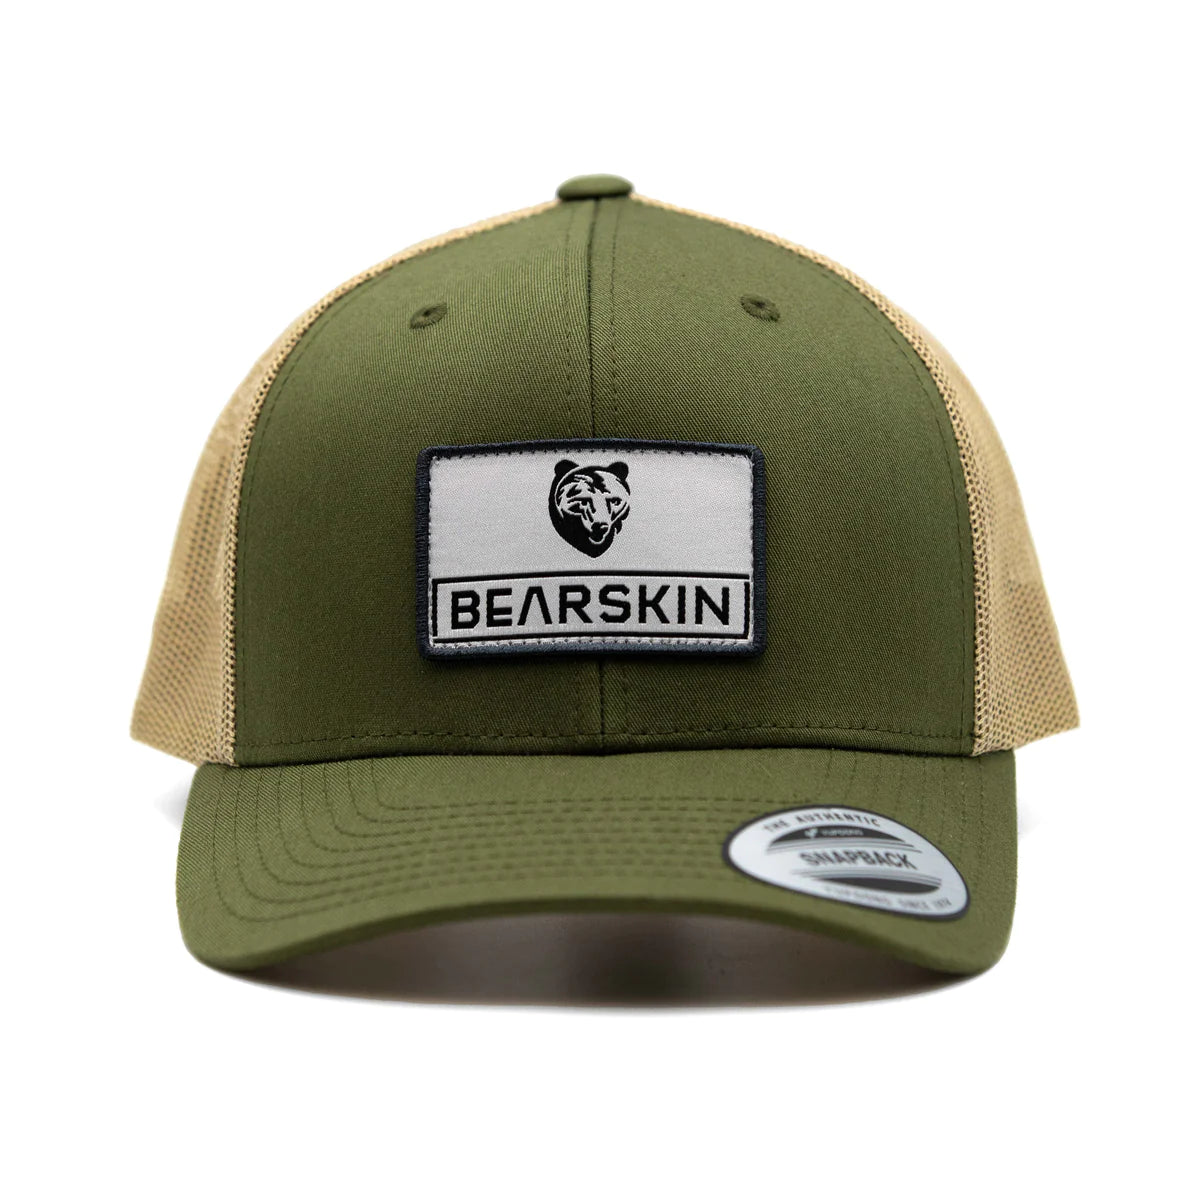 Bearskin Trucker cap